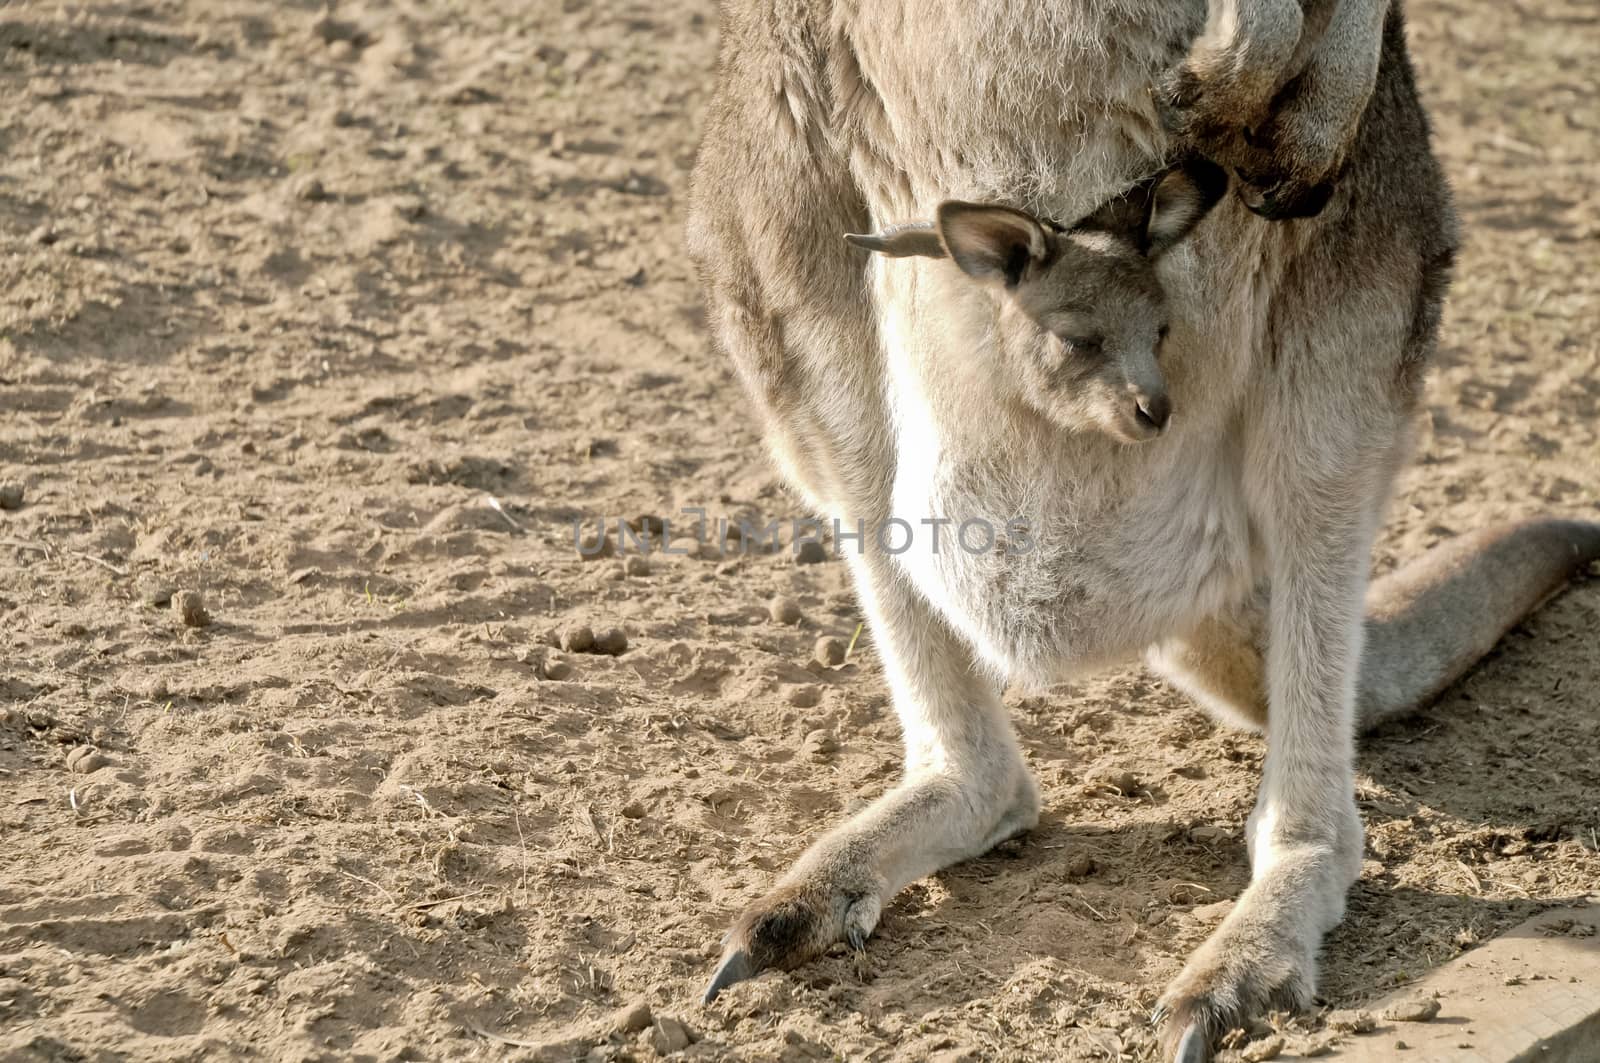 Little joey Kangaroo in a pouch by eyeofpaul